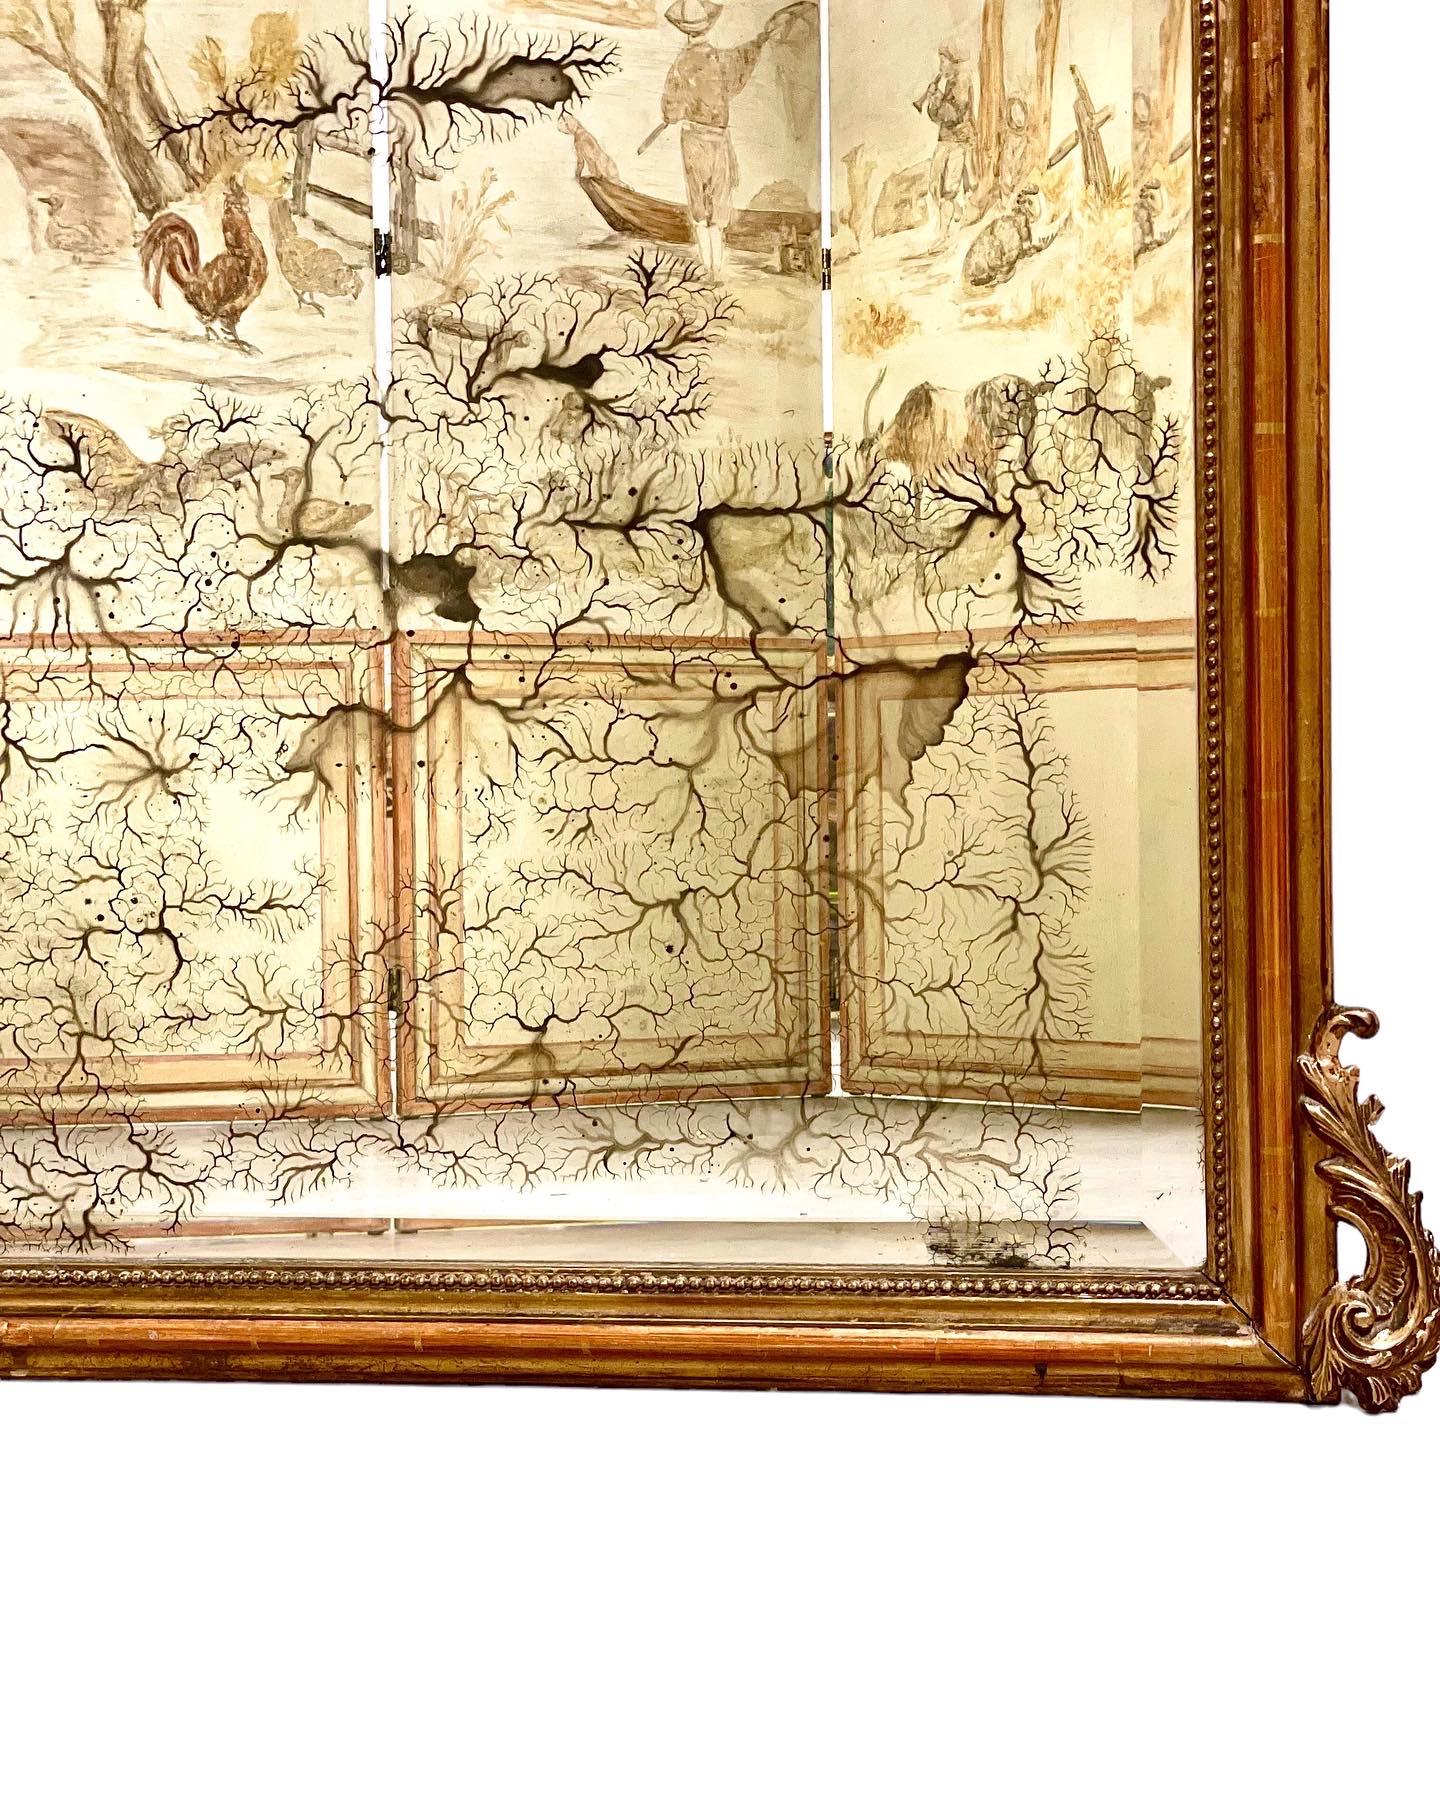 Imposant miroir à trumeau doré de style Louis XV d'époque Napoléon III, datant du 19e siècle. Surmontée d'un exubérant écusson composé de feuillages et de coquillages stylisés, ainsi que de motifs Rocaille tourbillonnants, cette belle pièce présente